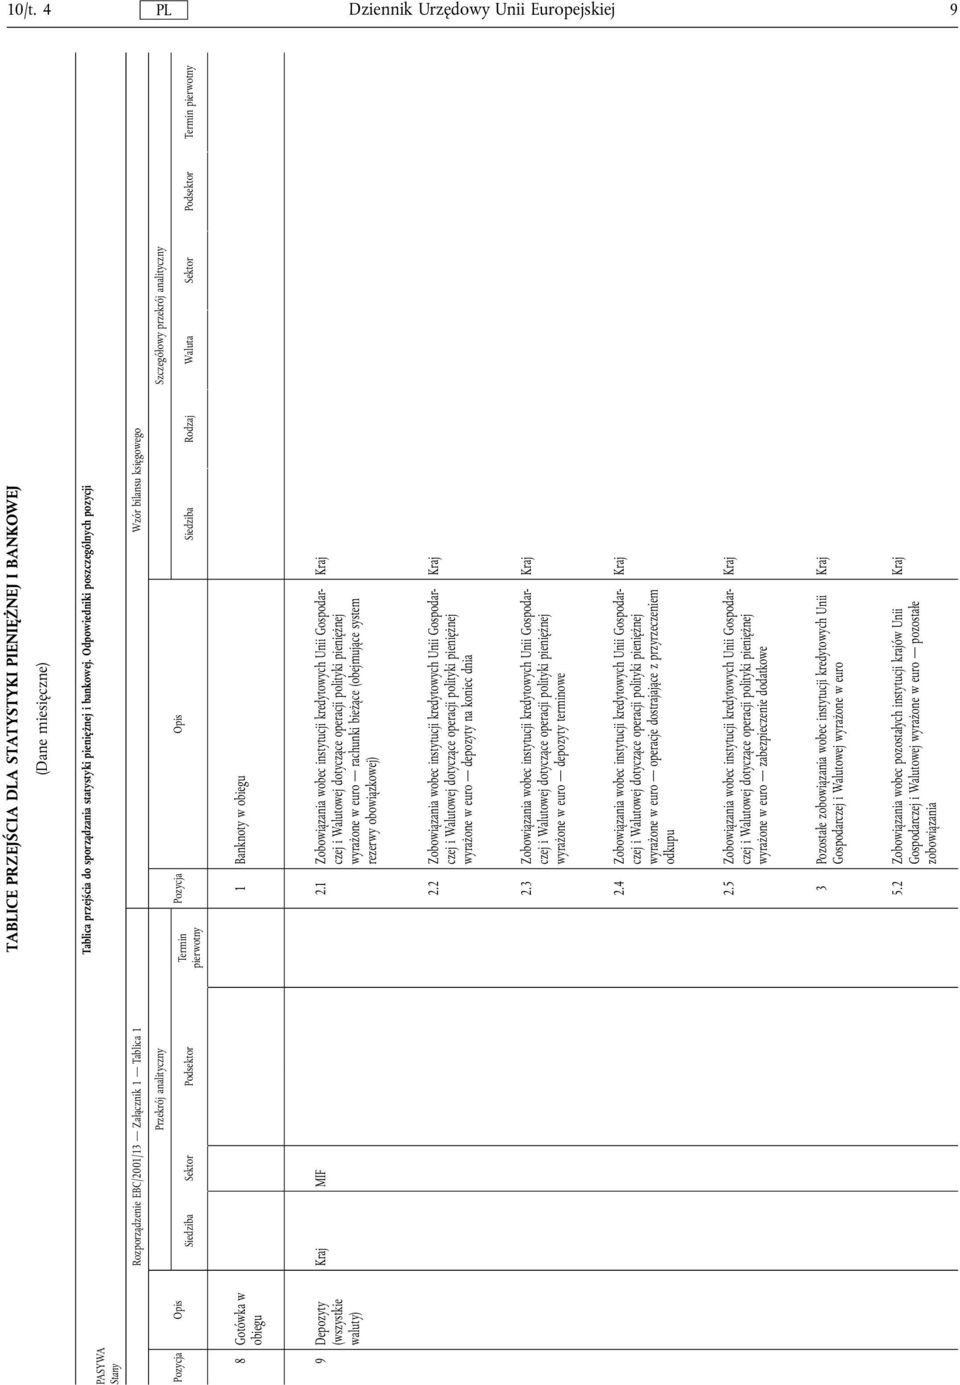 Odpowiedniki poszczególnych pozycji Rozporządzenie EBC/2001/13 Zalącznik 1 Tablica 1 Wzór bilansu księgowego Przekrój analityczny Siedziba Sektor Podsektor Termin pierwotny Szczególowy przekrój